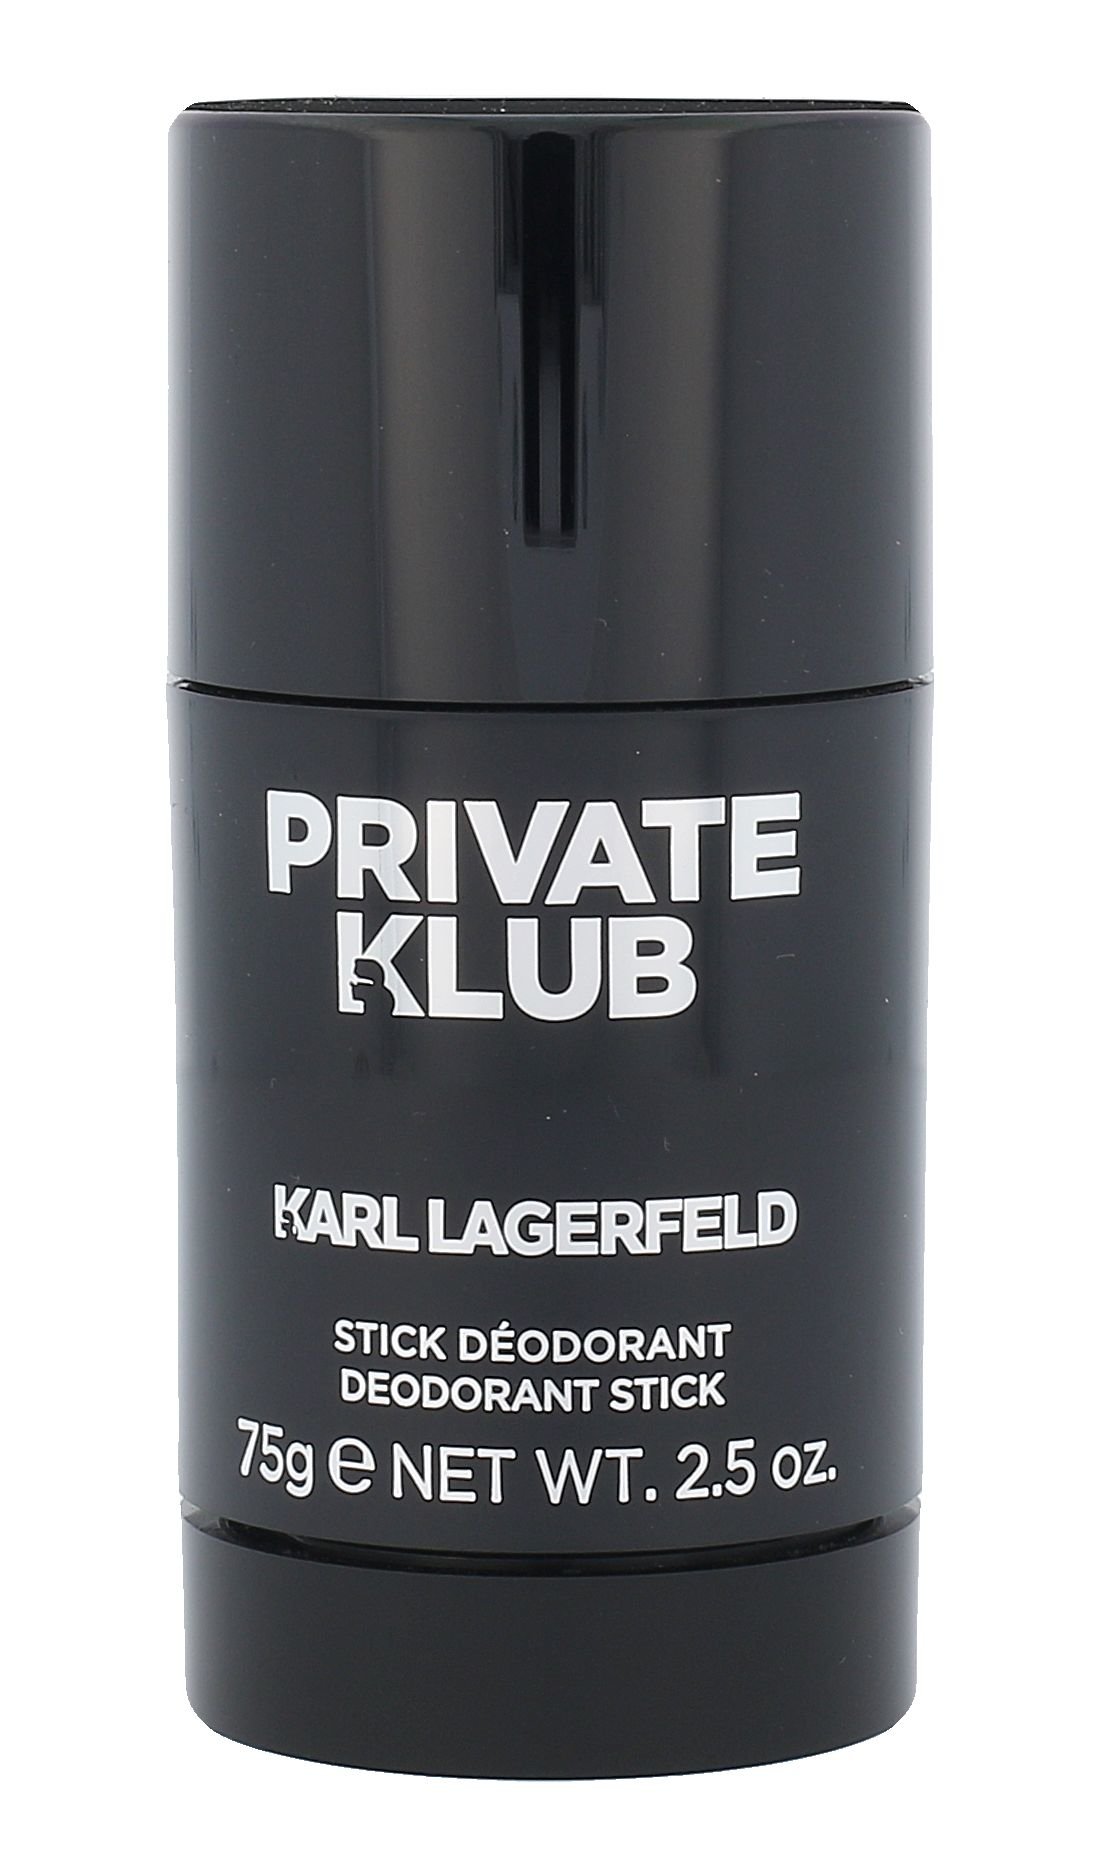 Karl Lagerfeld Karl Lagerfeld Private Klub